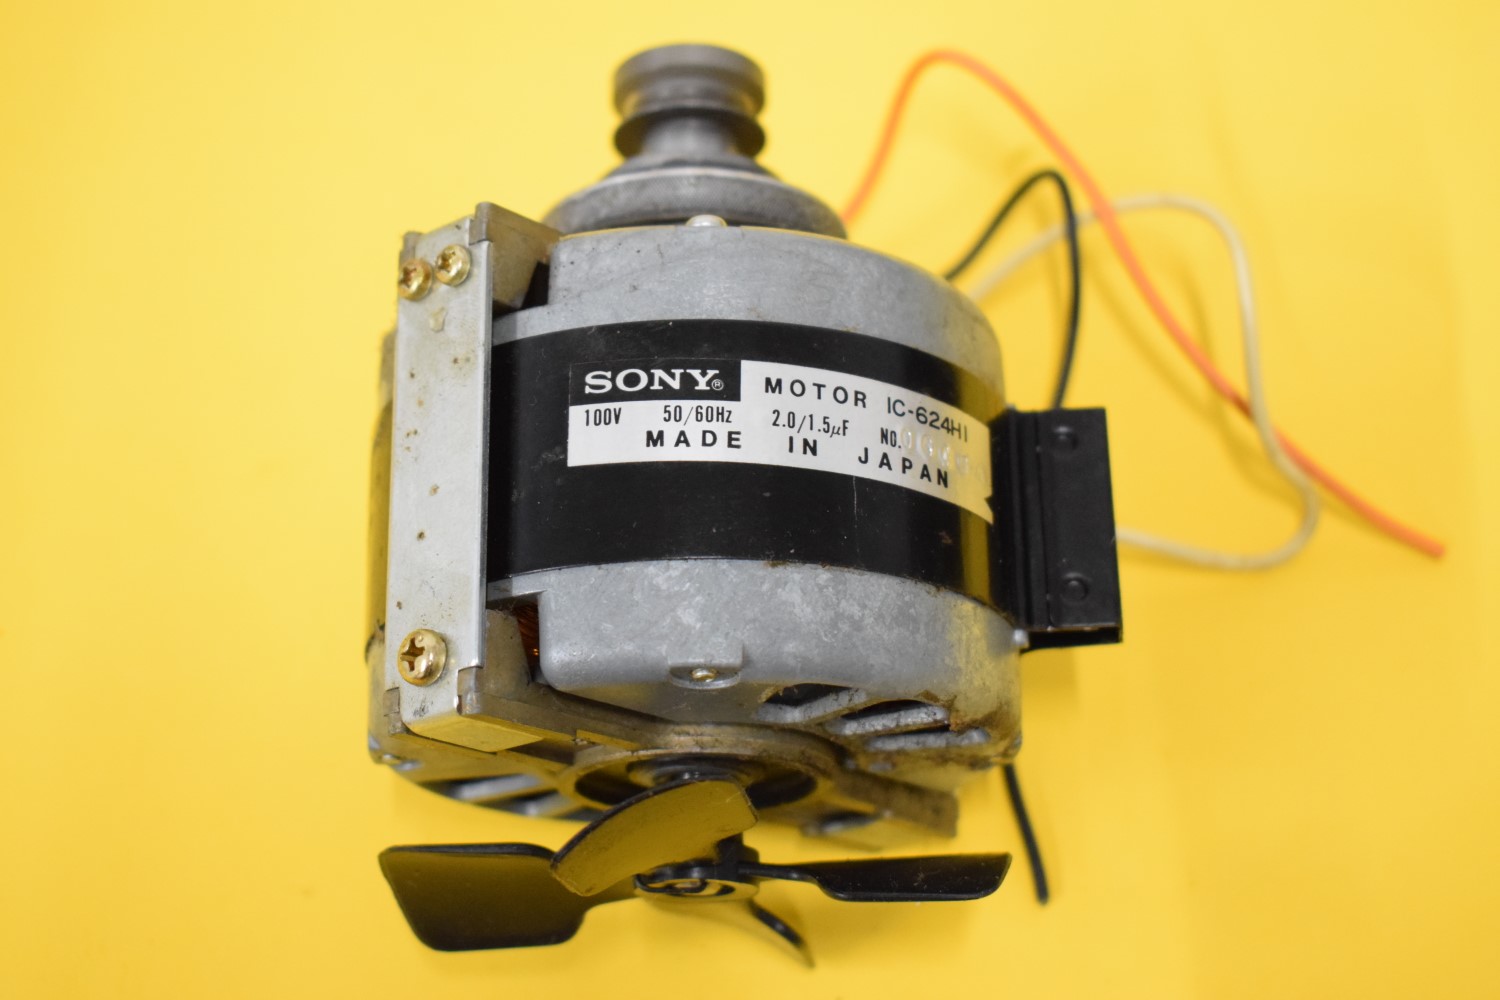 Sony TC-399 Tape Recorder – Type IC-624HI Capstan Motor